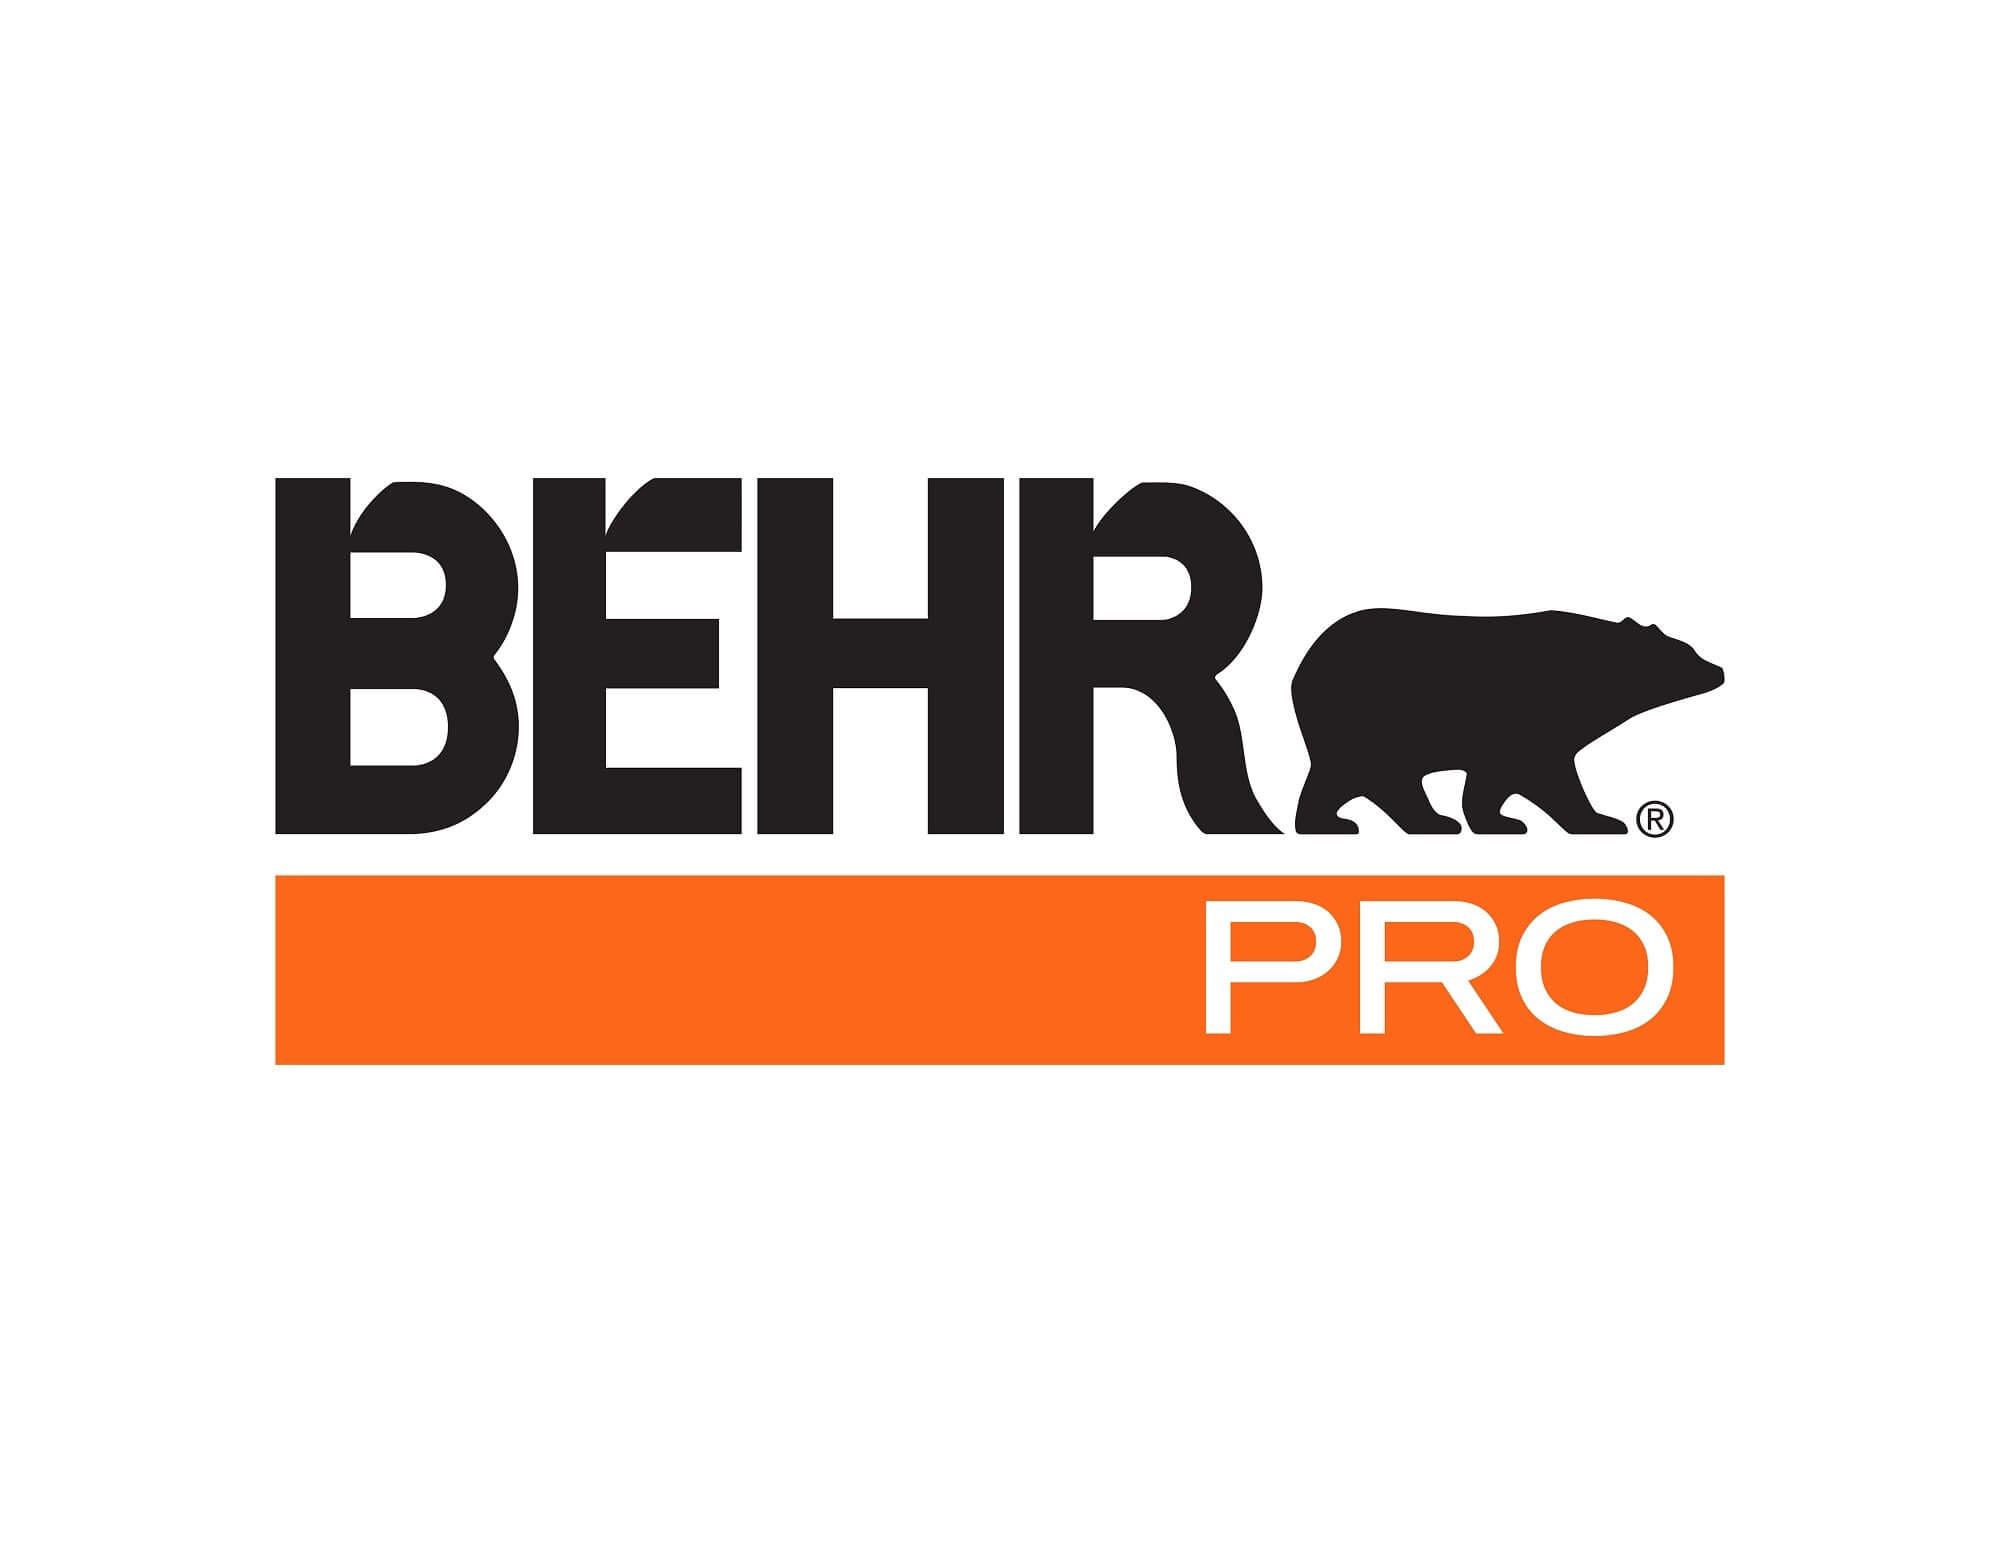 Behr Pro Logo